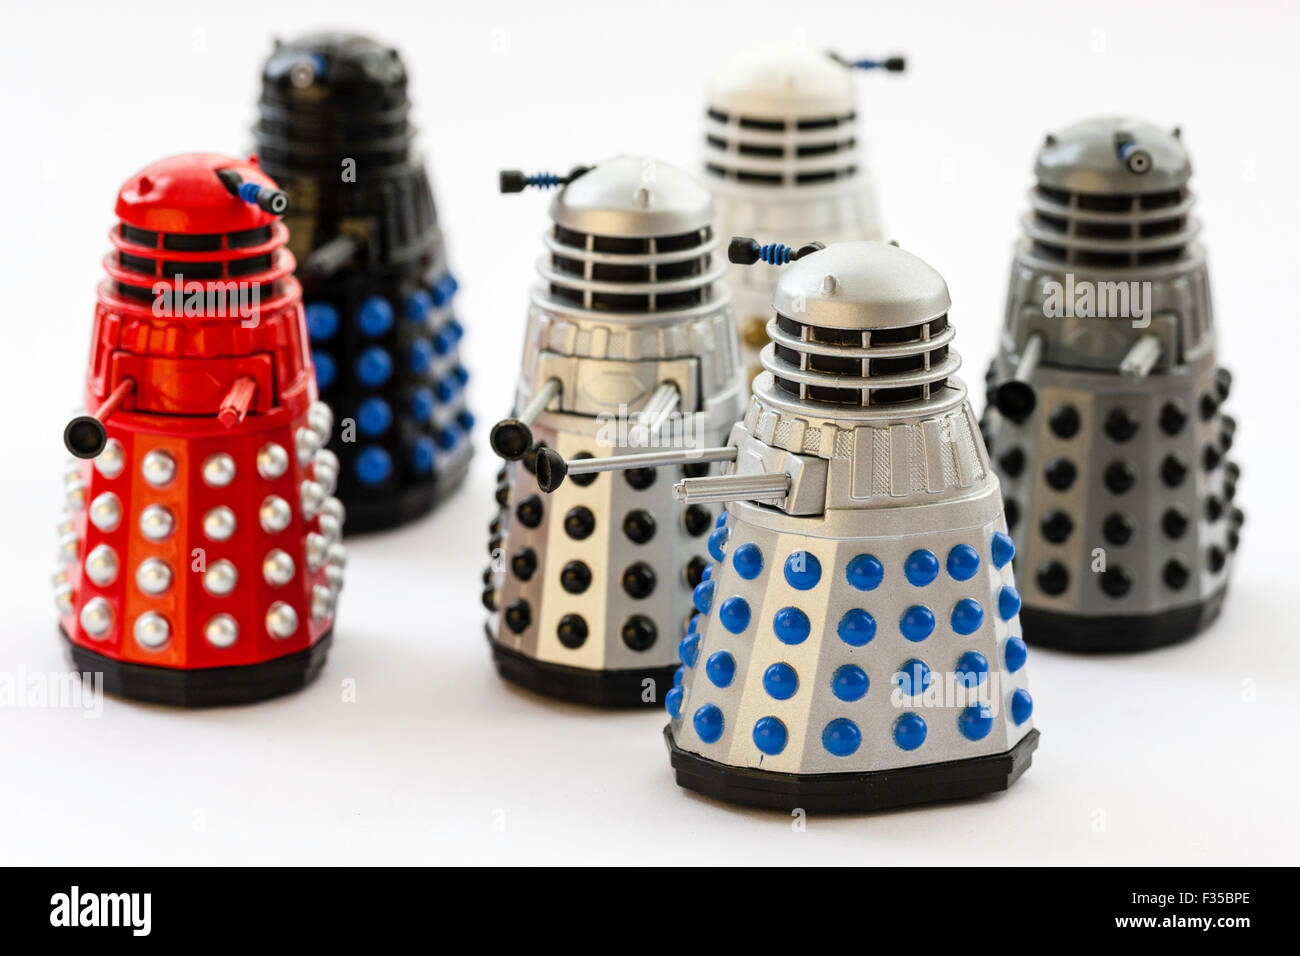 Daleks aus der BBC Dr, die TV-Serie. Berühmte Metal Monster. Corgi Toy, Metall Dalek mit Kopf. Sechs verschiedene Arten auf weißem Hintergrund. Stockfoto